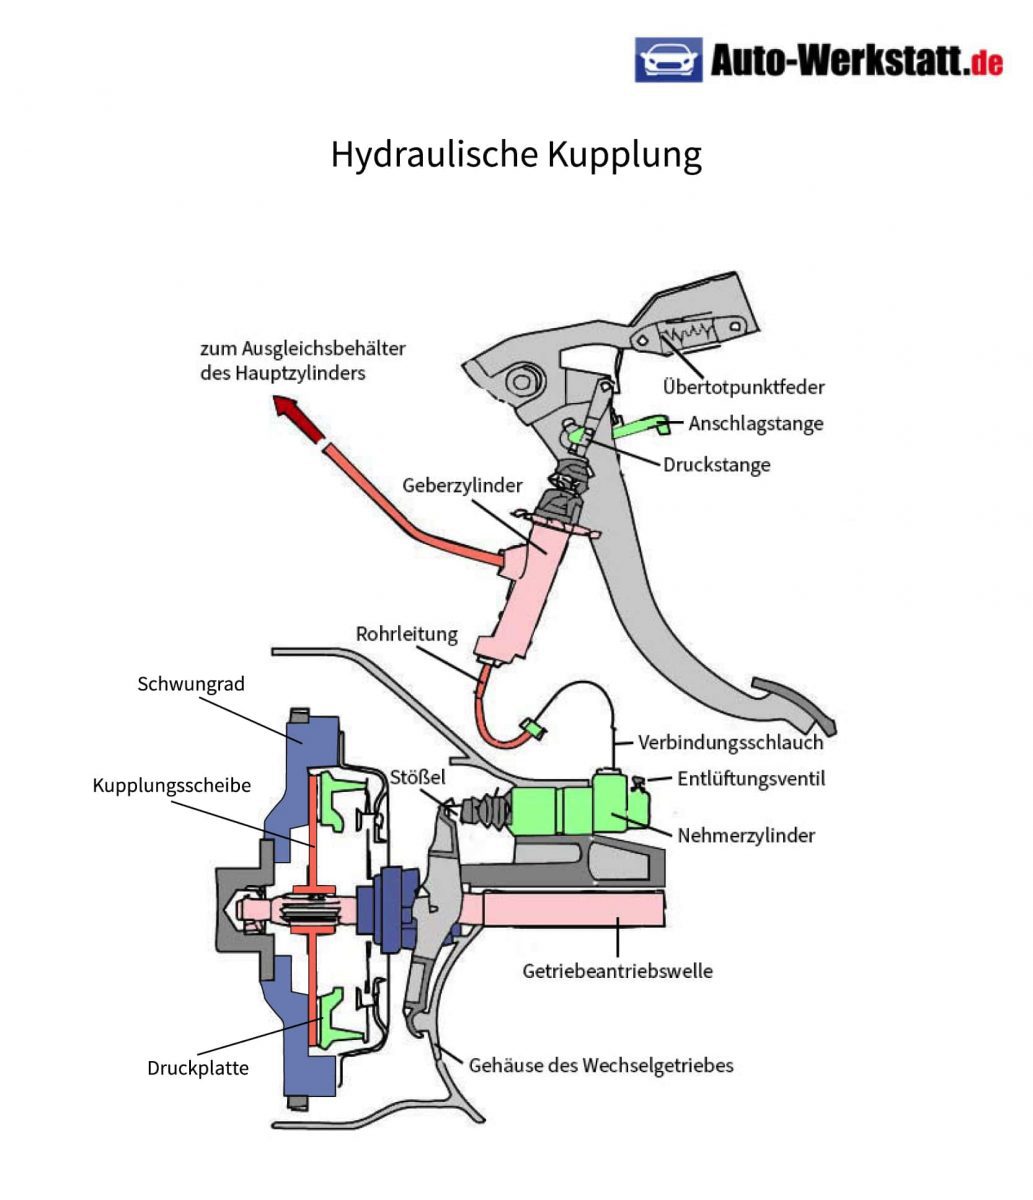 https://magazin.digitaleseiten.de/wp-content/uploads/2023/02/aufbau-hydraulische-kupplung-scaled.jpg